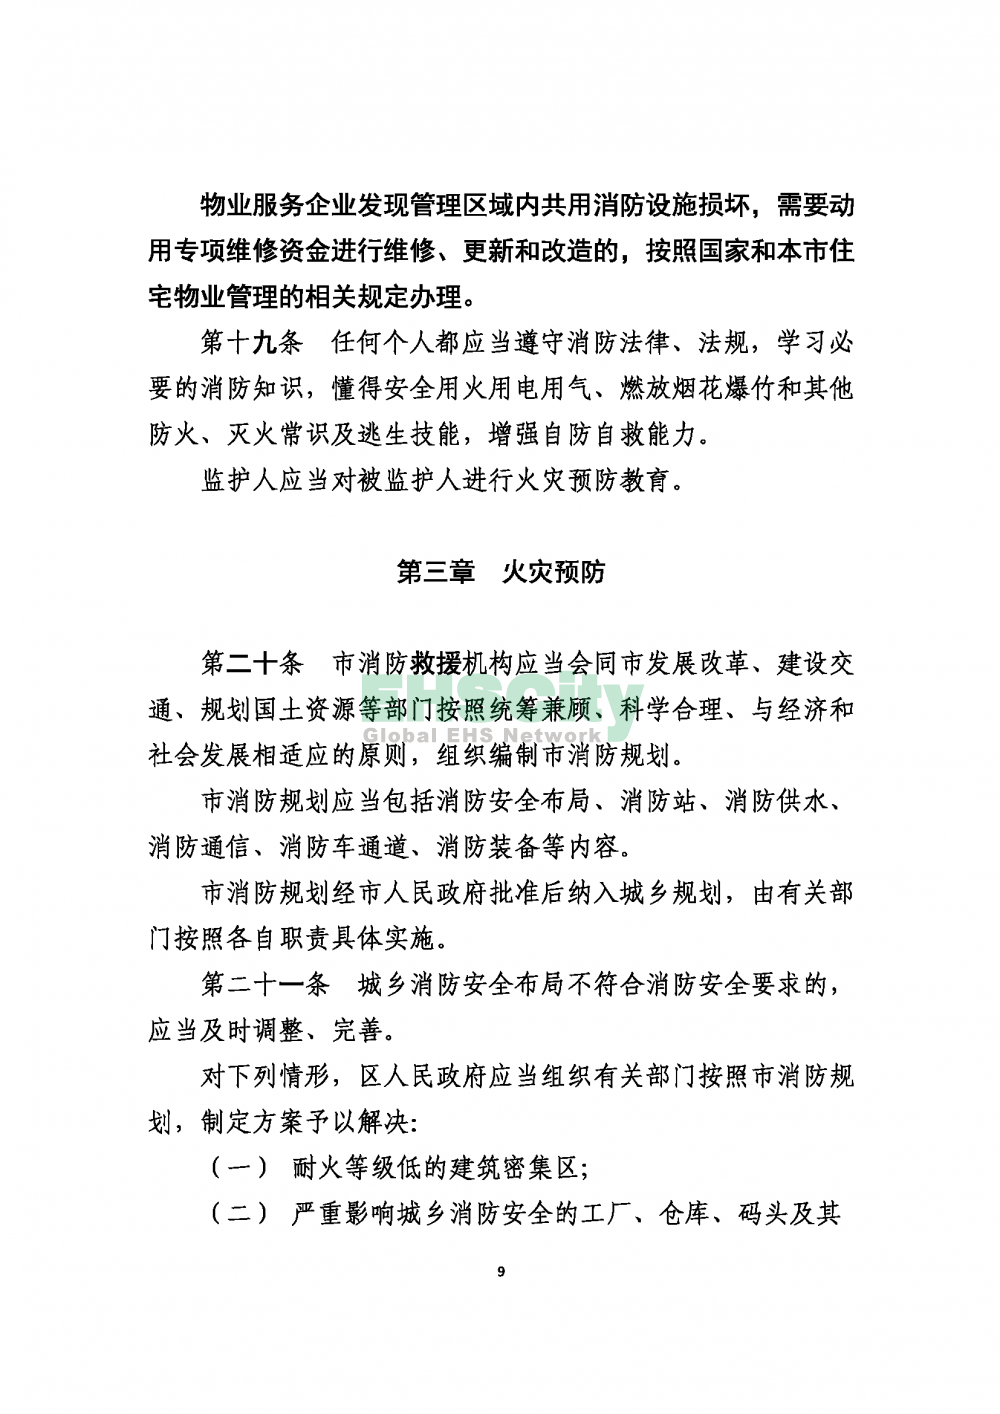 2020版上海消防条例_页面_09